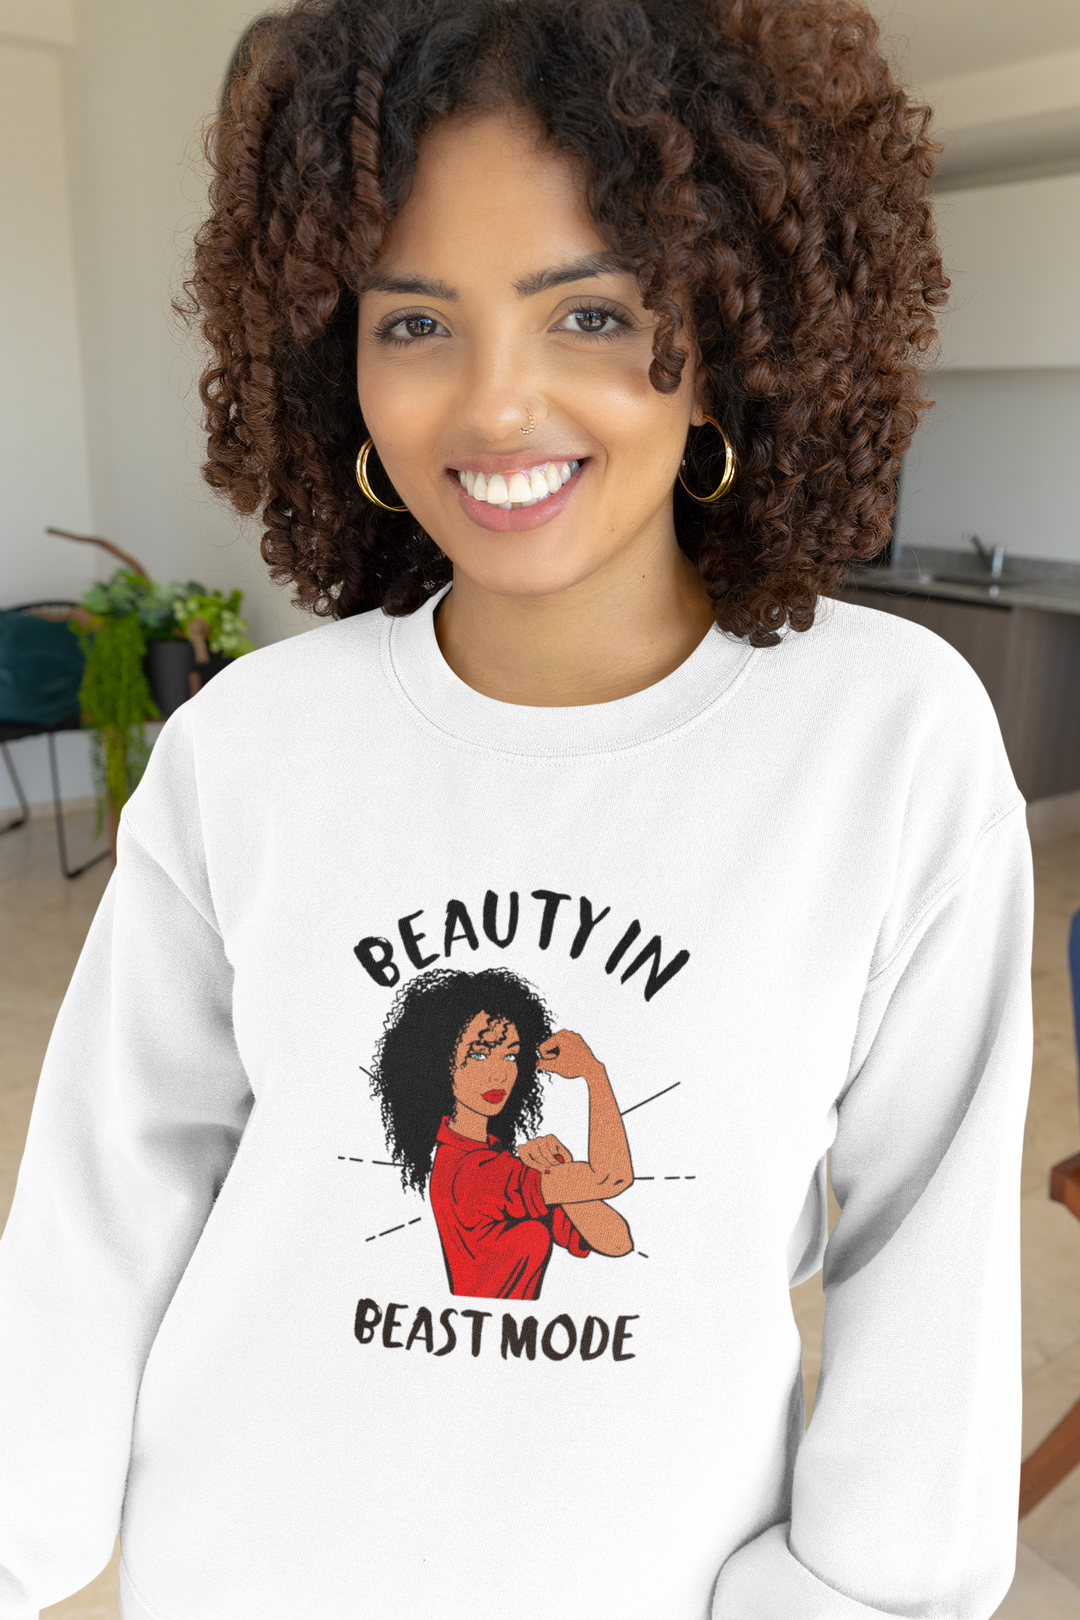 Women's Curly Hair Beauty In Beast Mode Sweatshirt